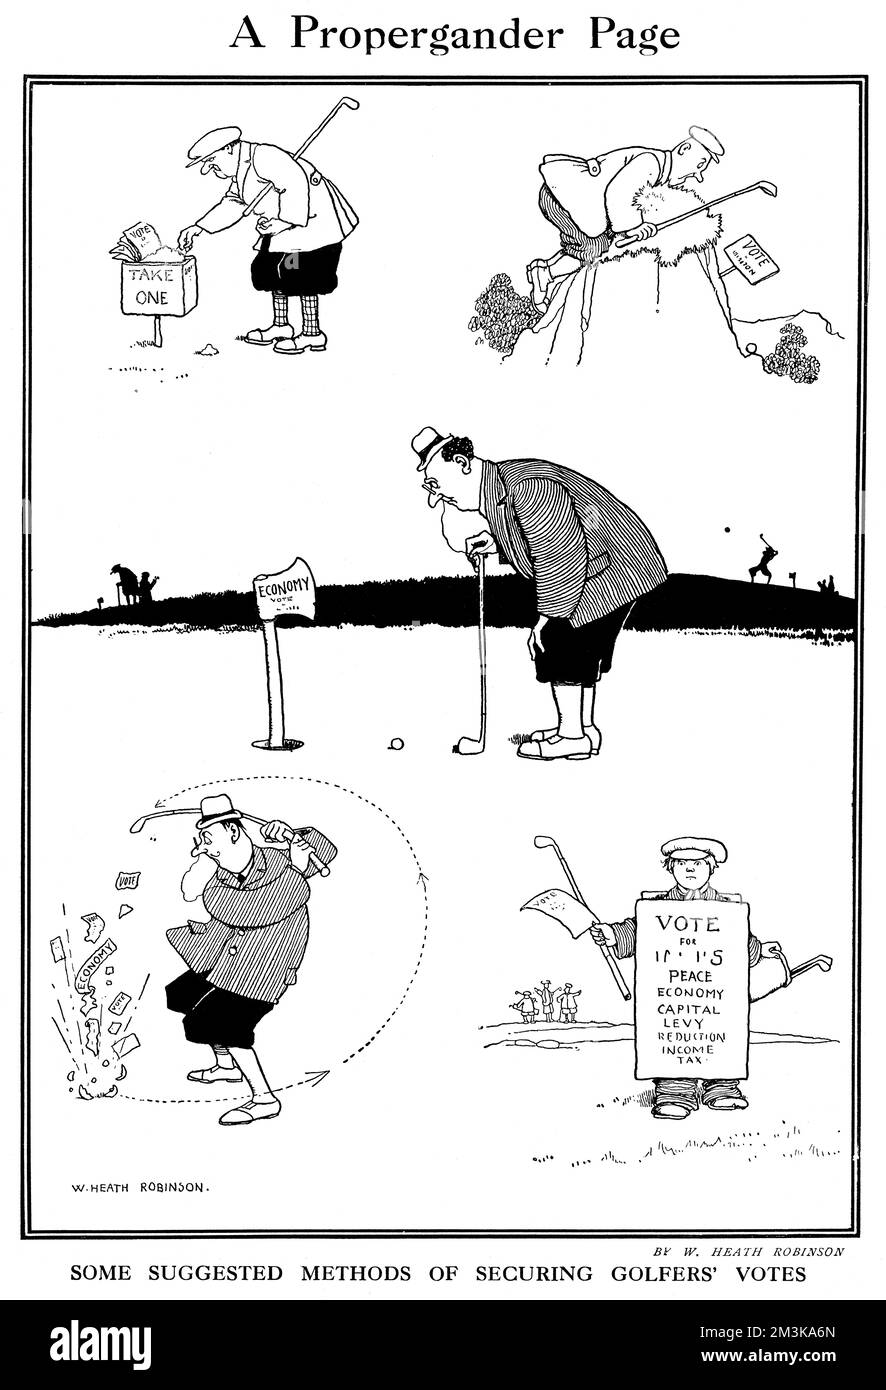 Alcuni metodi suggeriti per assicurare i voti dei golfers mentre stanno giocando il golf. Nota bene: Il credito deve apparire come cortesia della tenuta della signora J.C.Robinson/Pollinger Ltd/ILN/Mary Evans 1922 Foto Stock